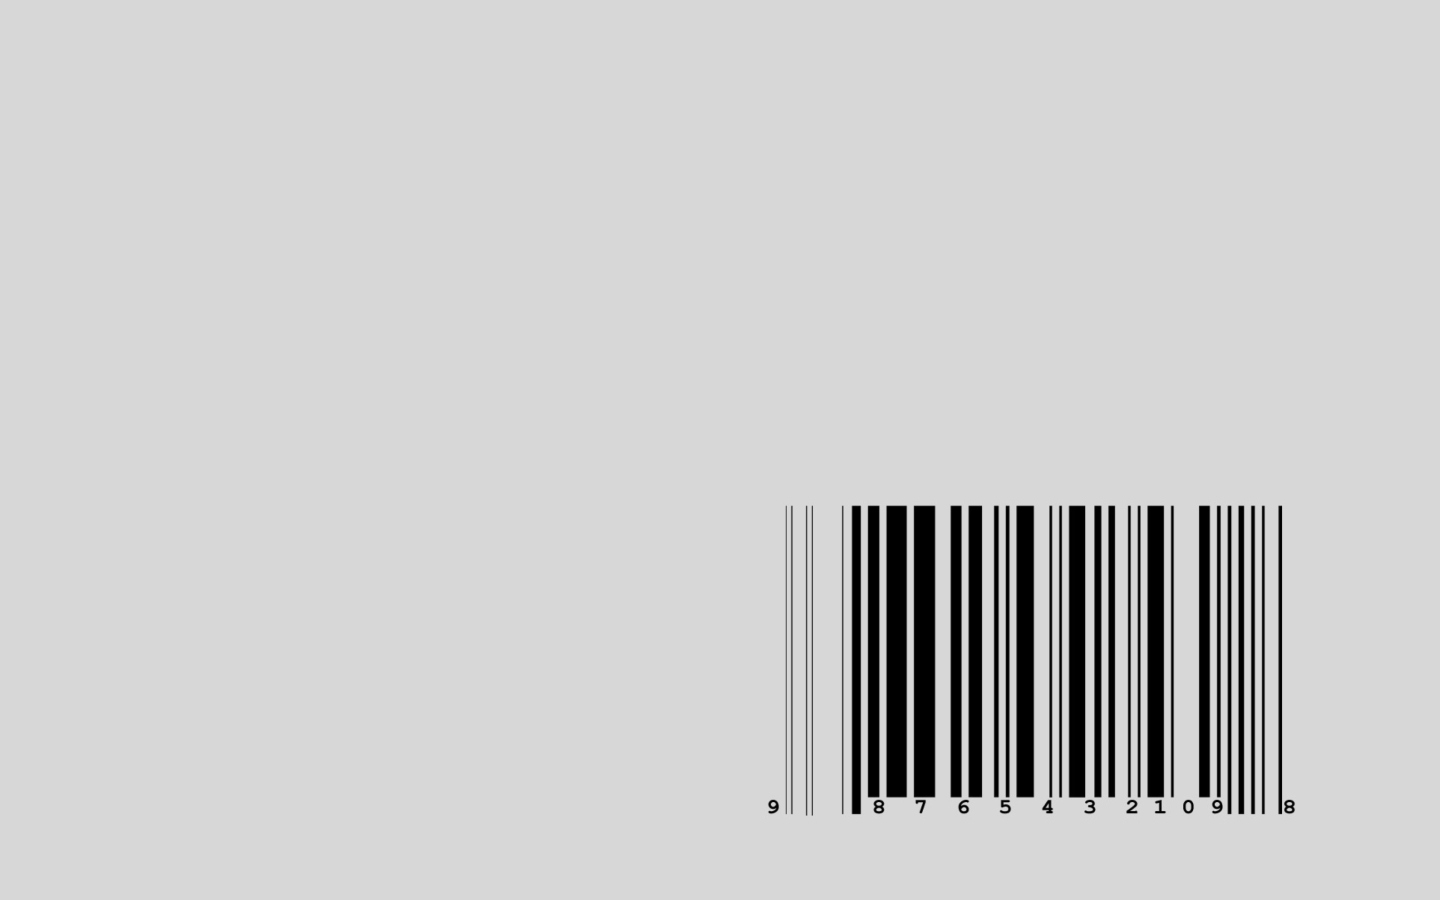 Das Barcode Wallpaper 1440x900